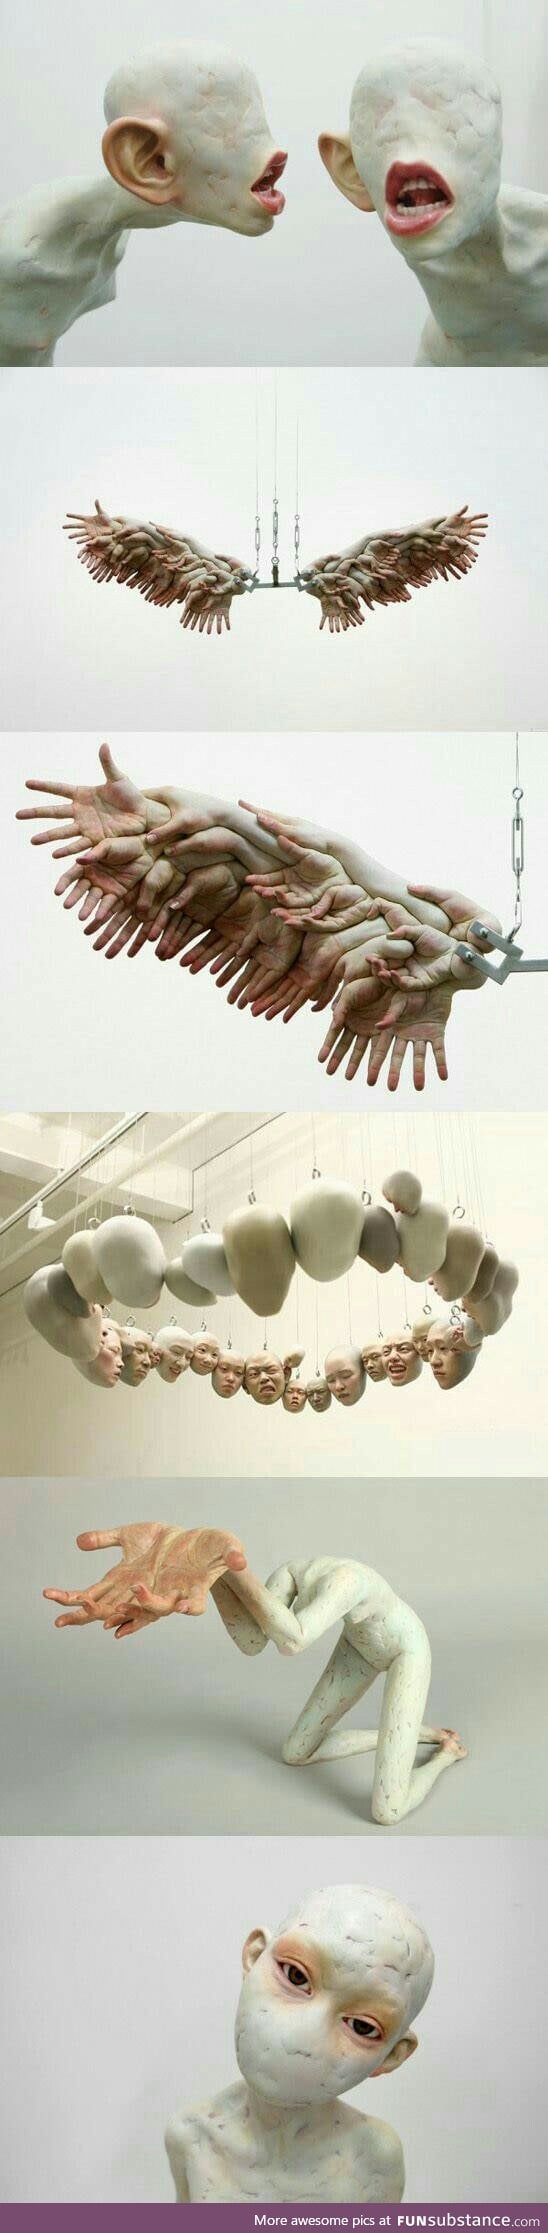 Freaky human sculptures